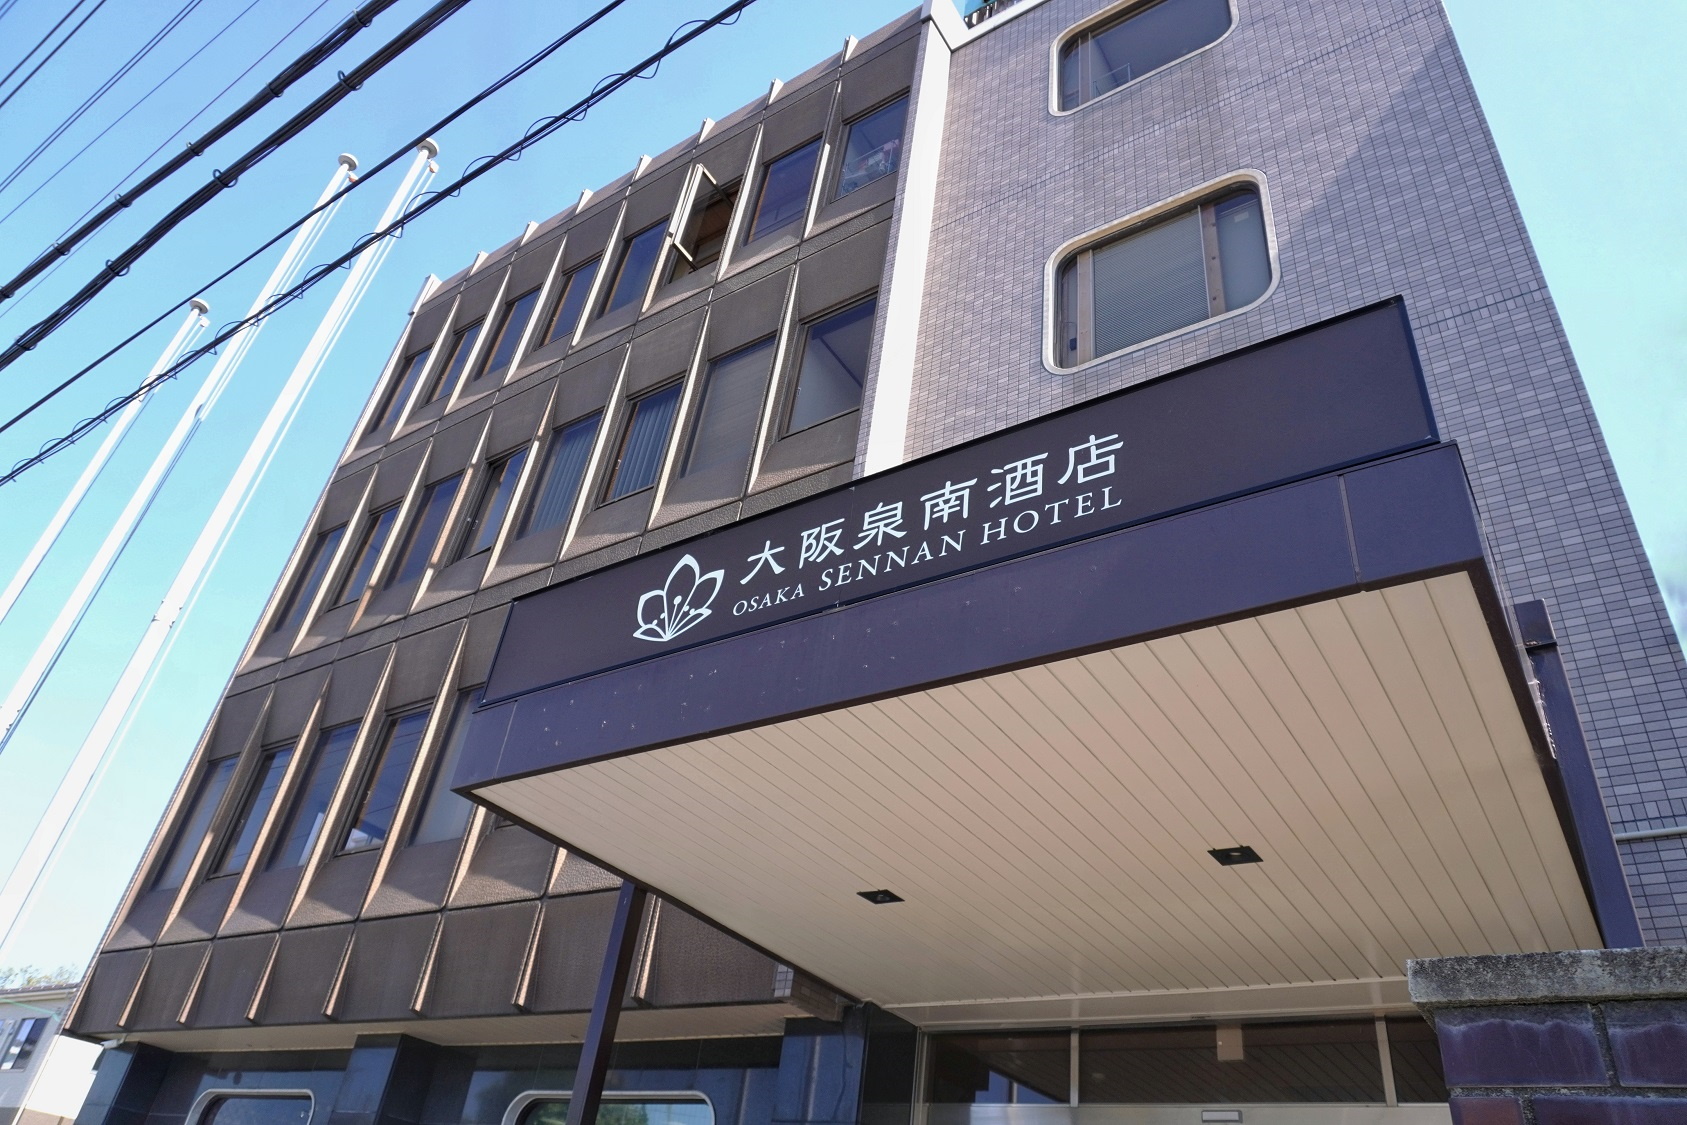 大阪泉南酒店 image